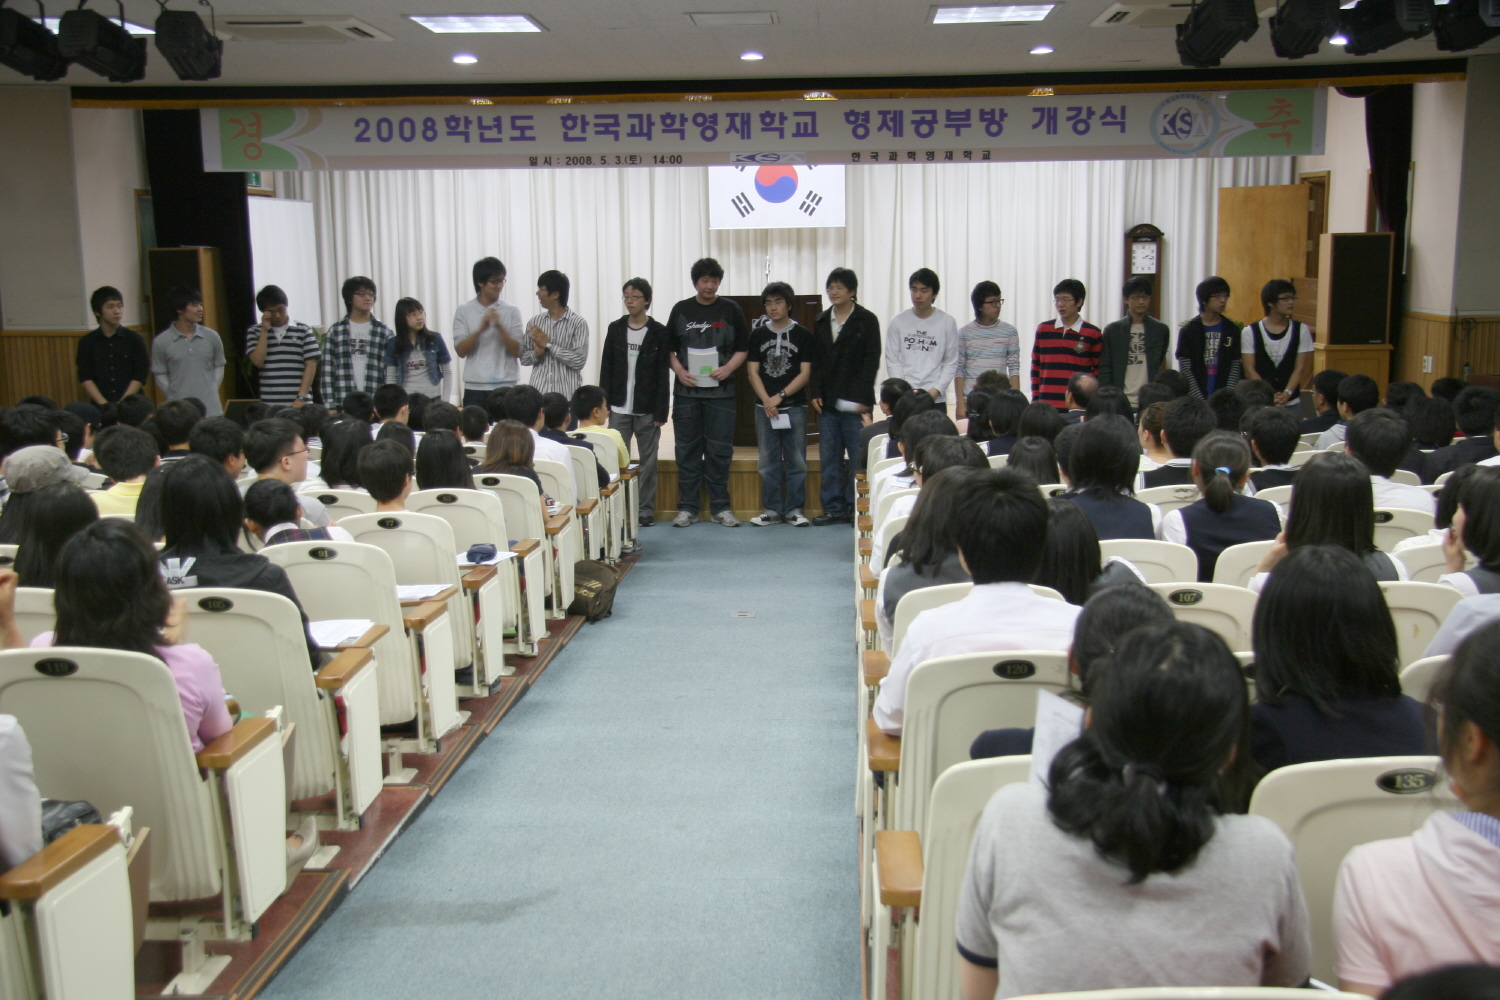 한국과학영재학교 형제공부방 개강식(2008.5.3)